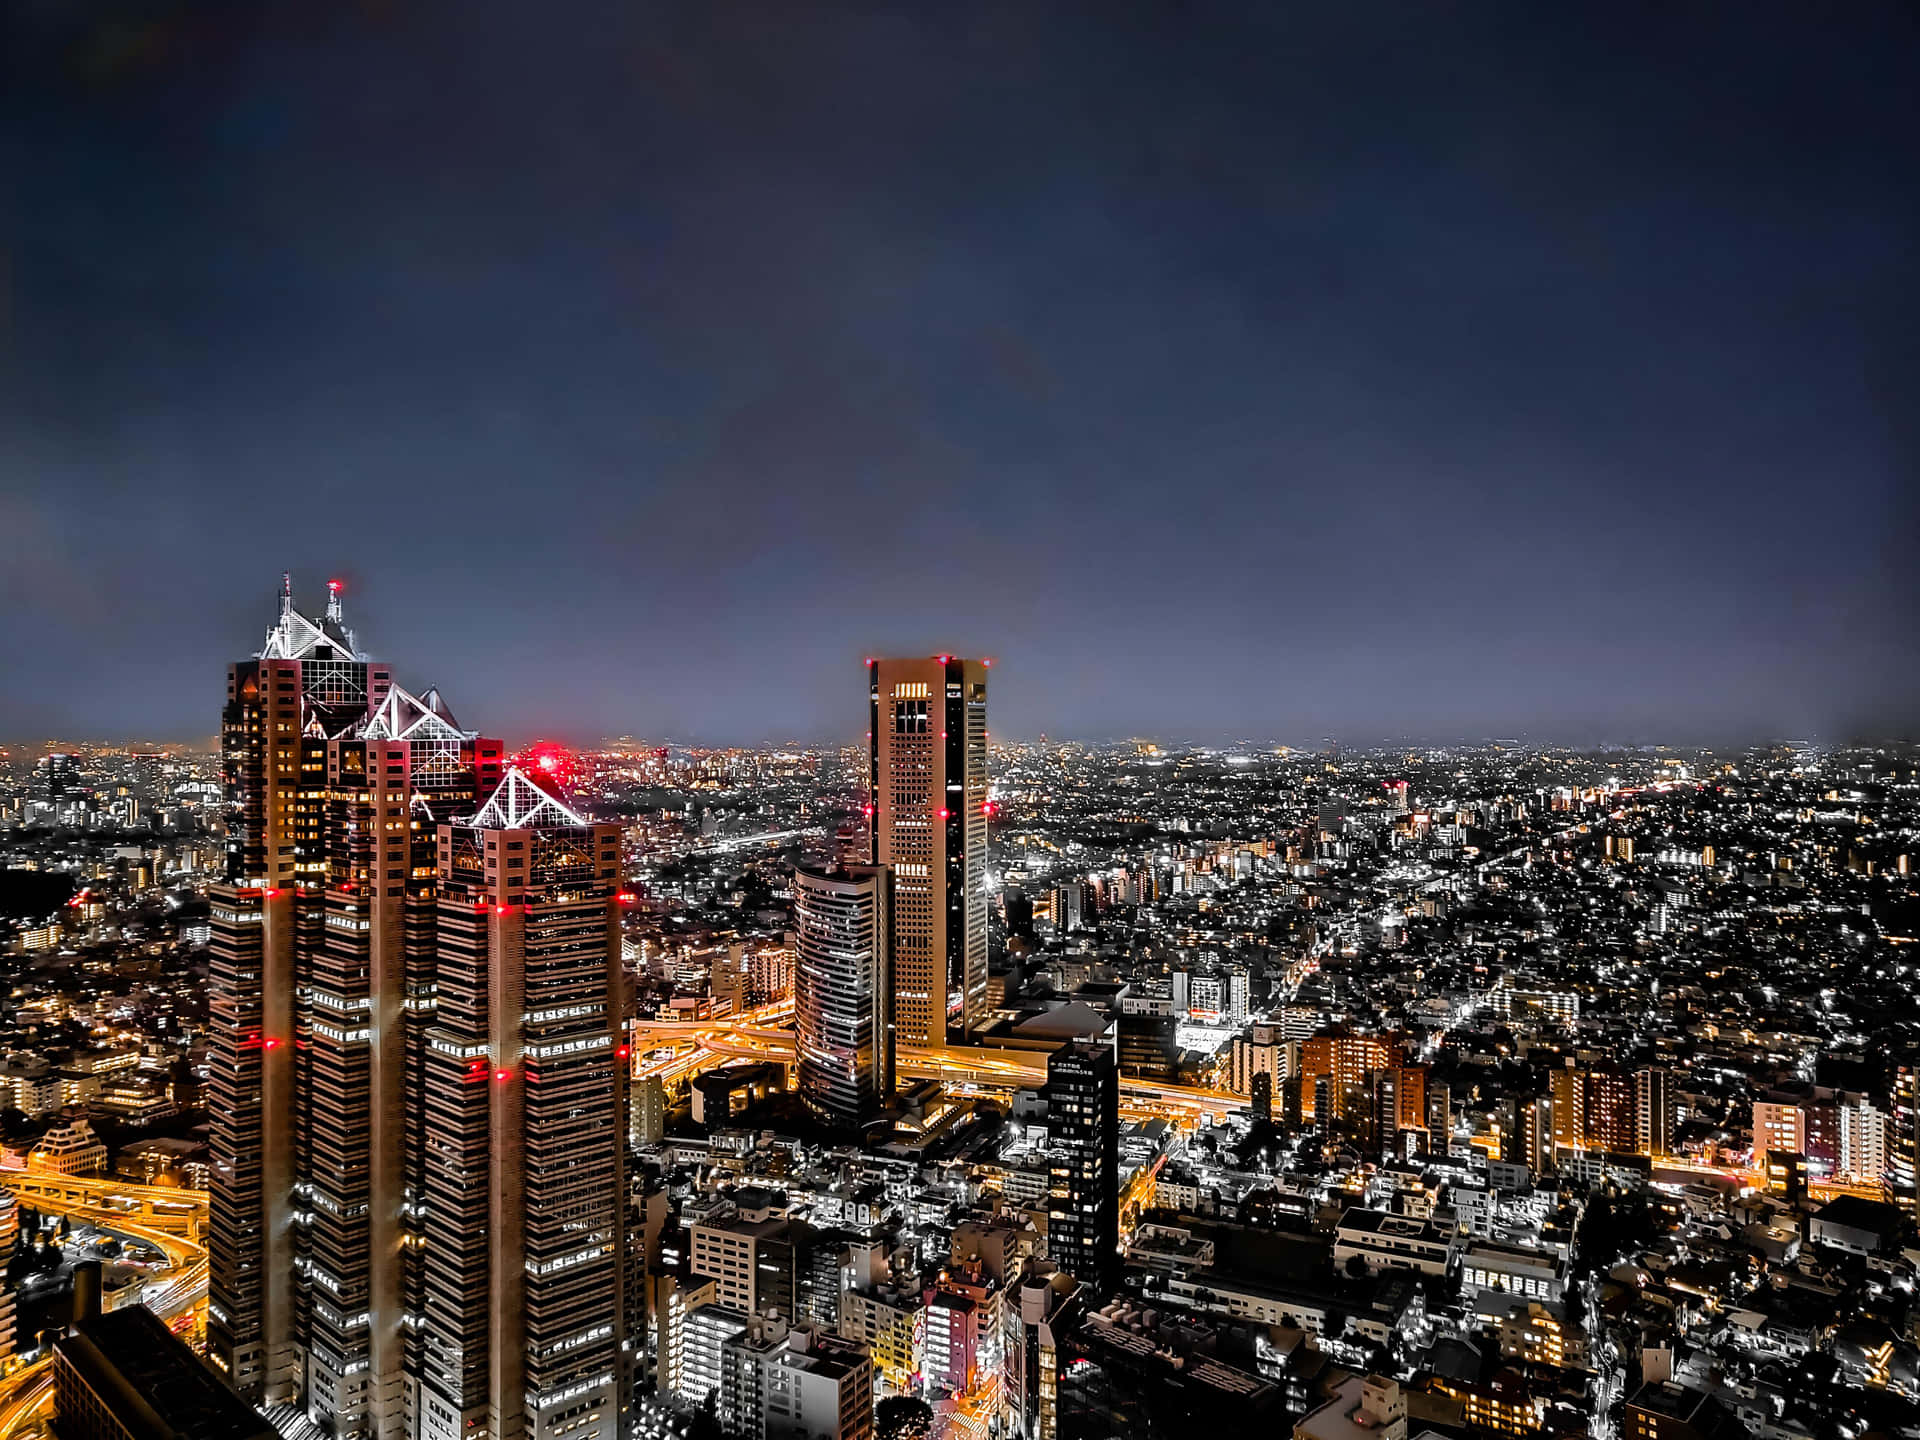 Imagende La Ciudad De Tokio De Noche Con Edificios Altos